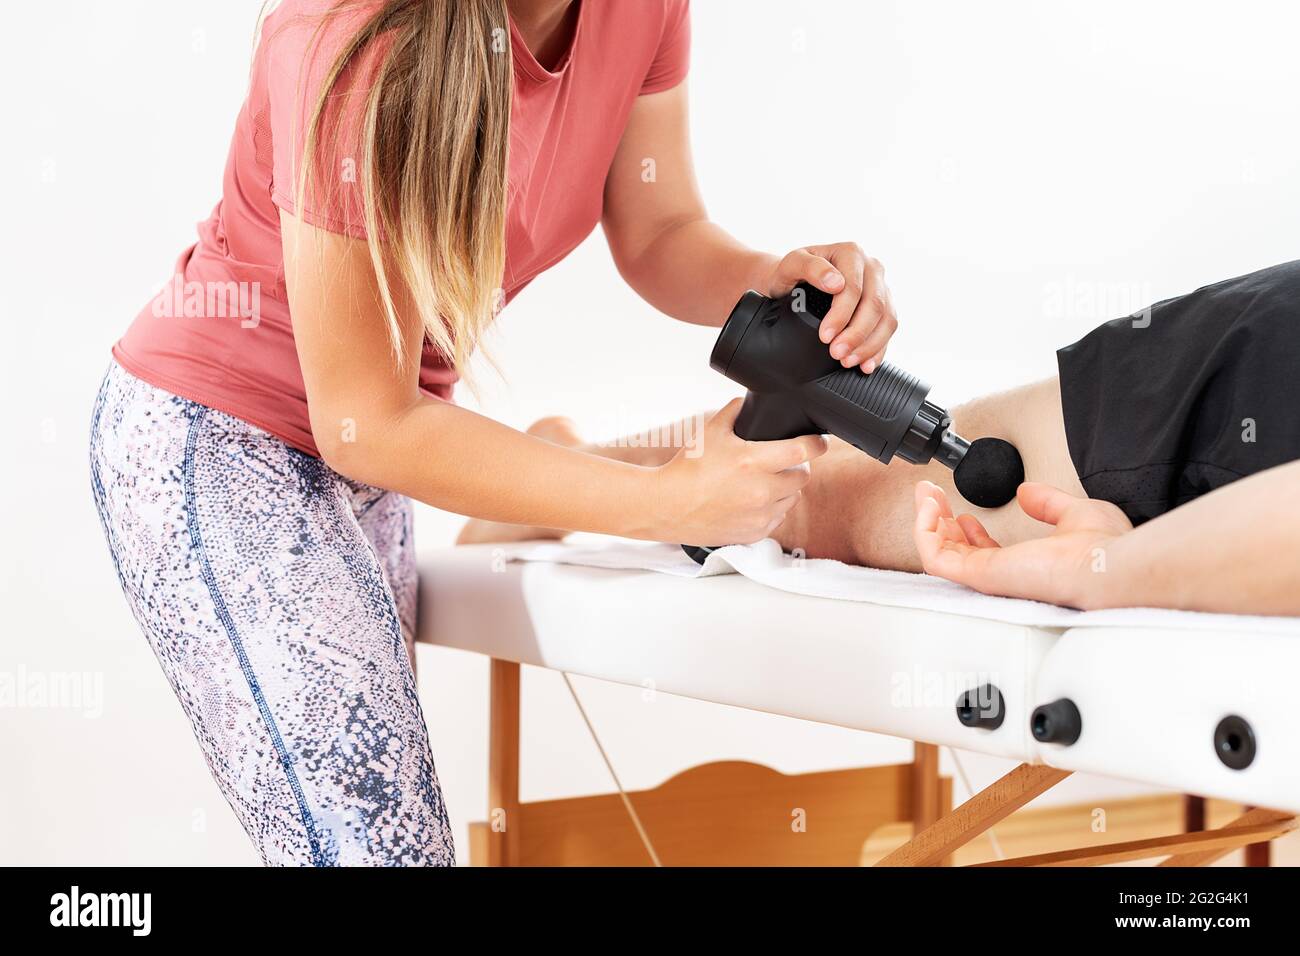 https://c8.alamy.com/compes/2g2g4k1/pistola-de-masaje-fisioterapeuta-femenina-joven-que-utiliza-una-pistola-de-masaje-manual-para-aliviar-el-dolor-muscular-de-las-piernas-durante-la-sesion-de-fisioterapia-2g2g4k1.jpg